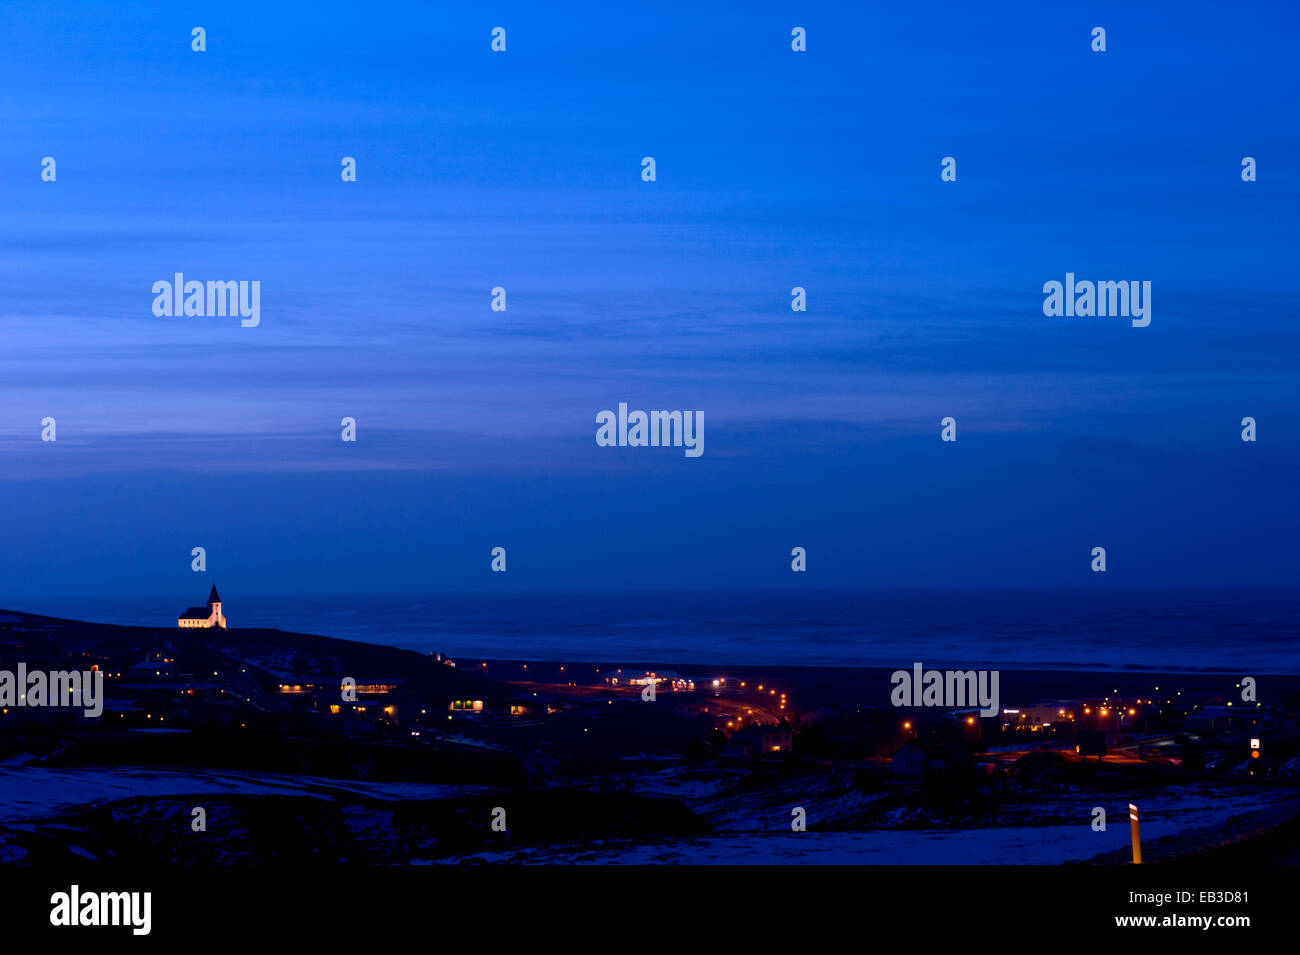 Vik cityscape illuminated at night, Sudhurland, Iceland Stock Photo